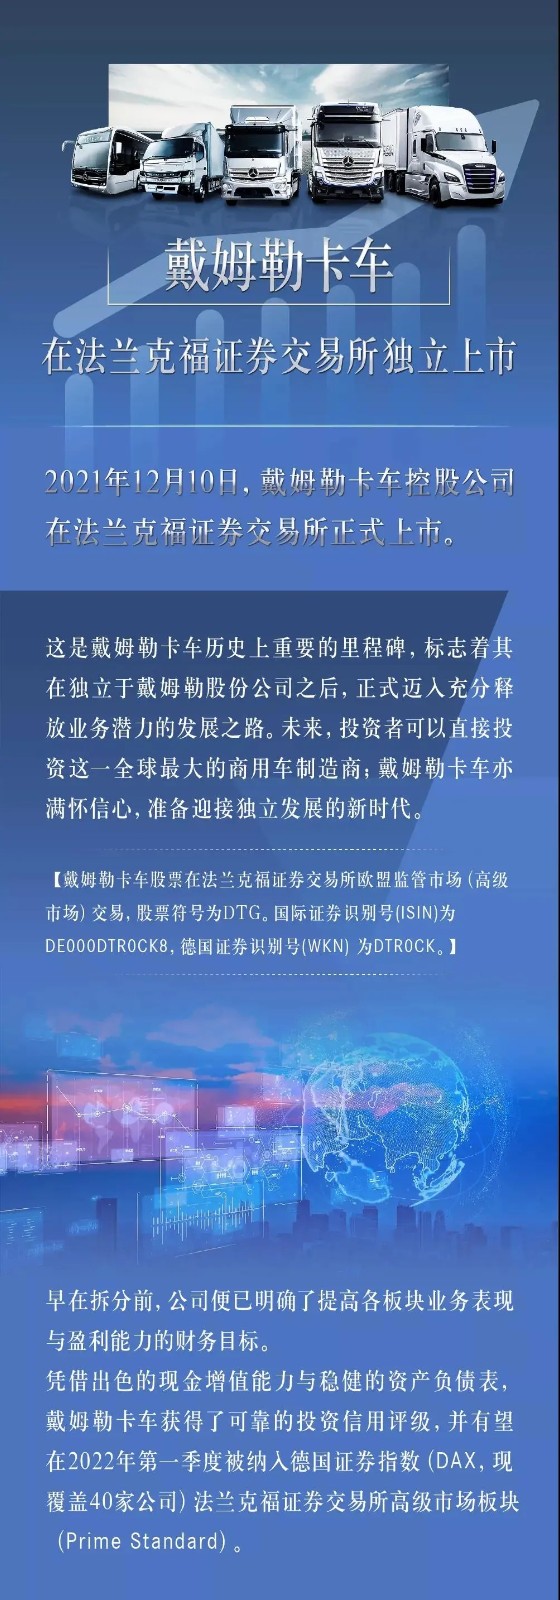 据戴姆勒卡车中国官微消息，今天（12月10日），戴姆勒卡车控股公司在法兰克福证券交易所正式上市。